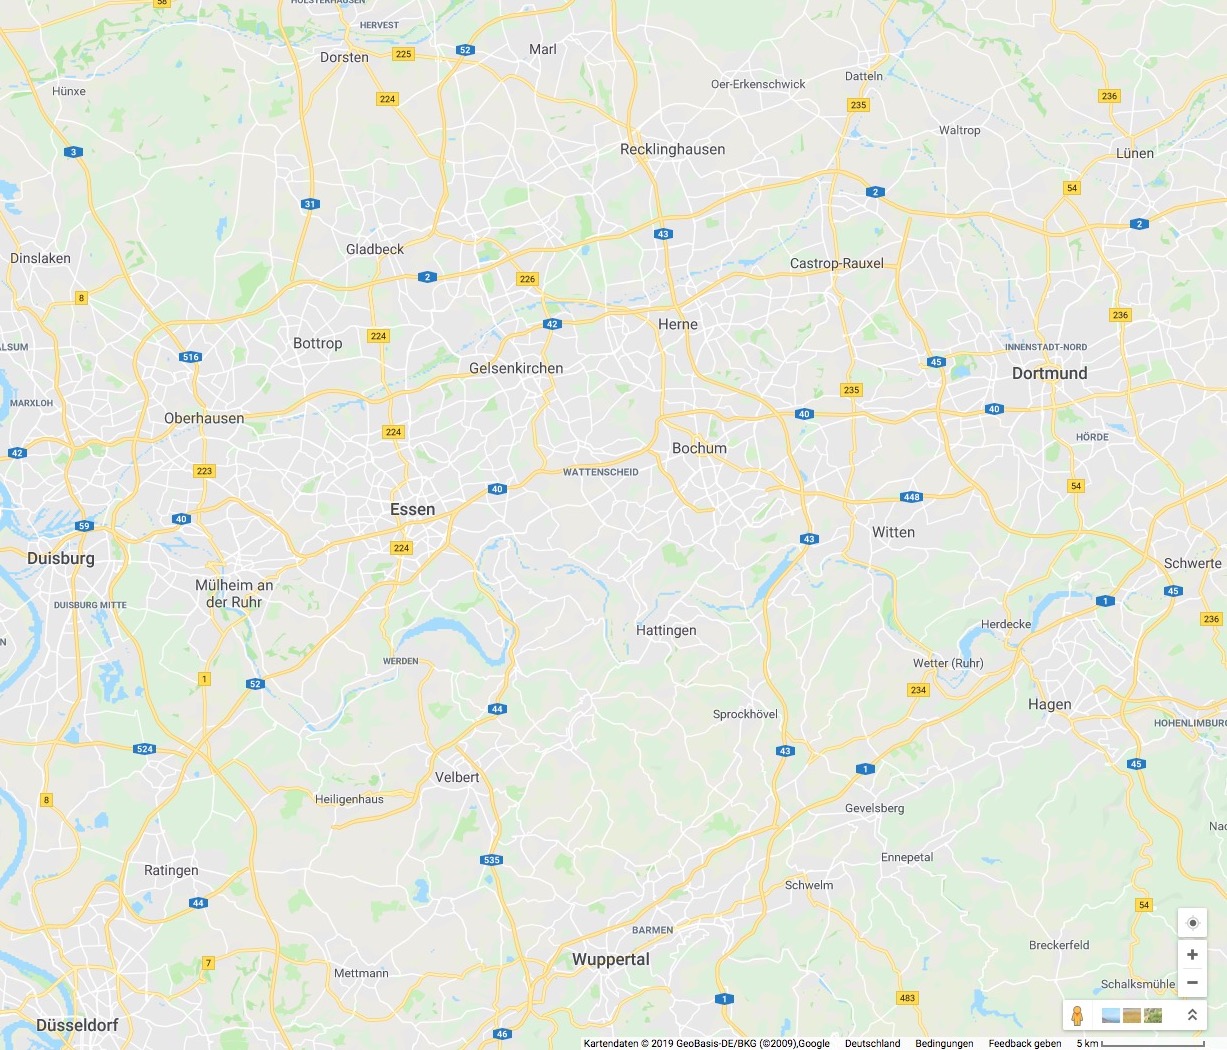 Nord-Süd-Achse: Kreis Recklinghausen bis WuppertalOst-West-Achse: Dortmund bis Duisburg